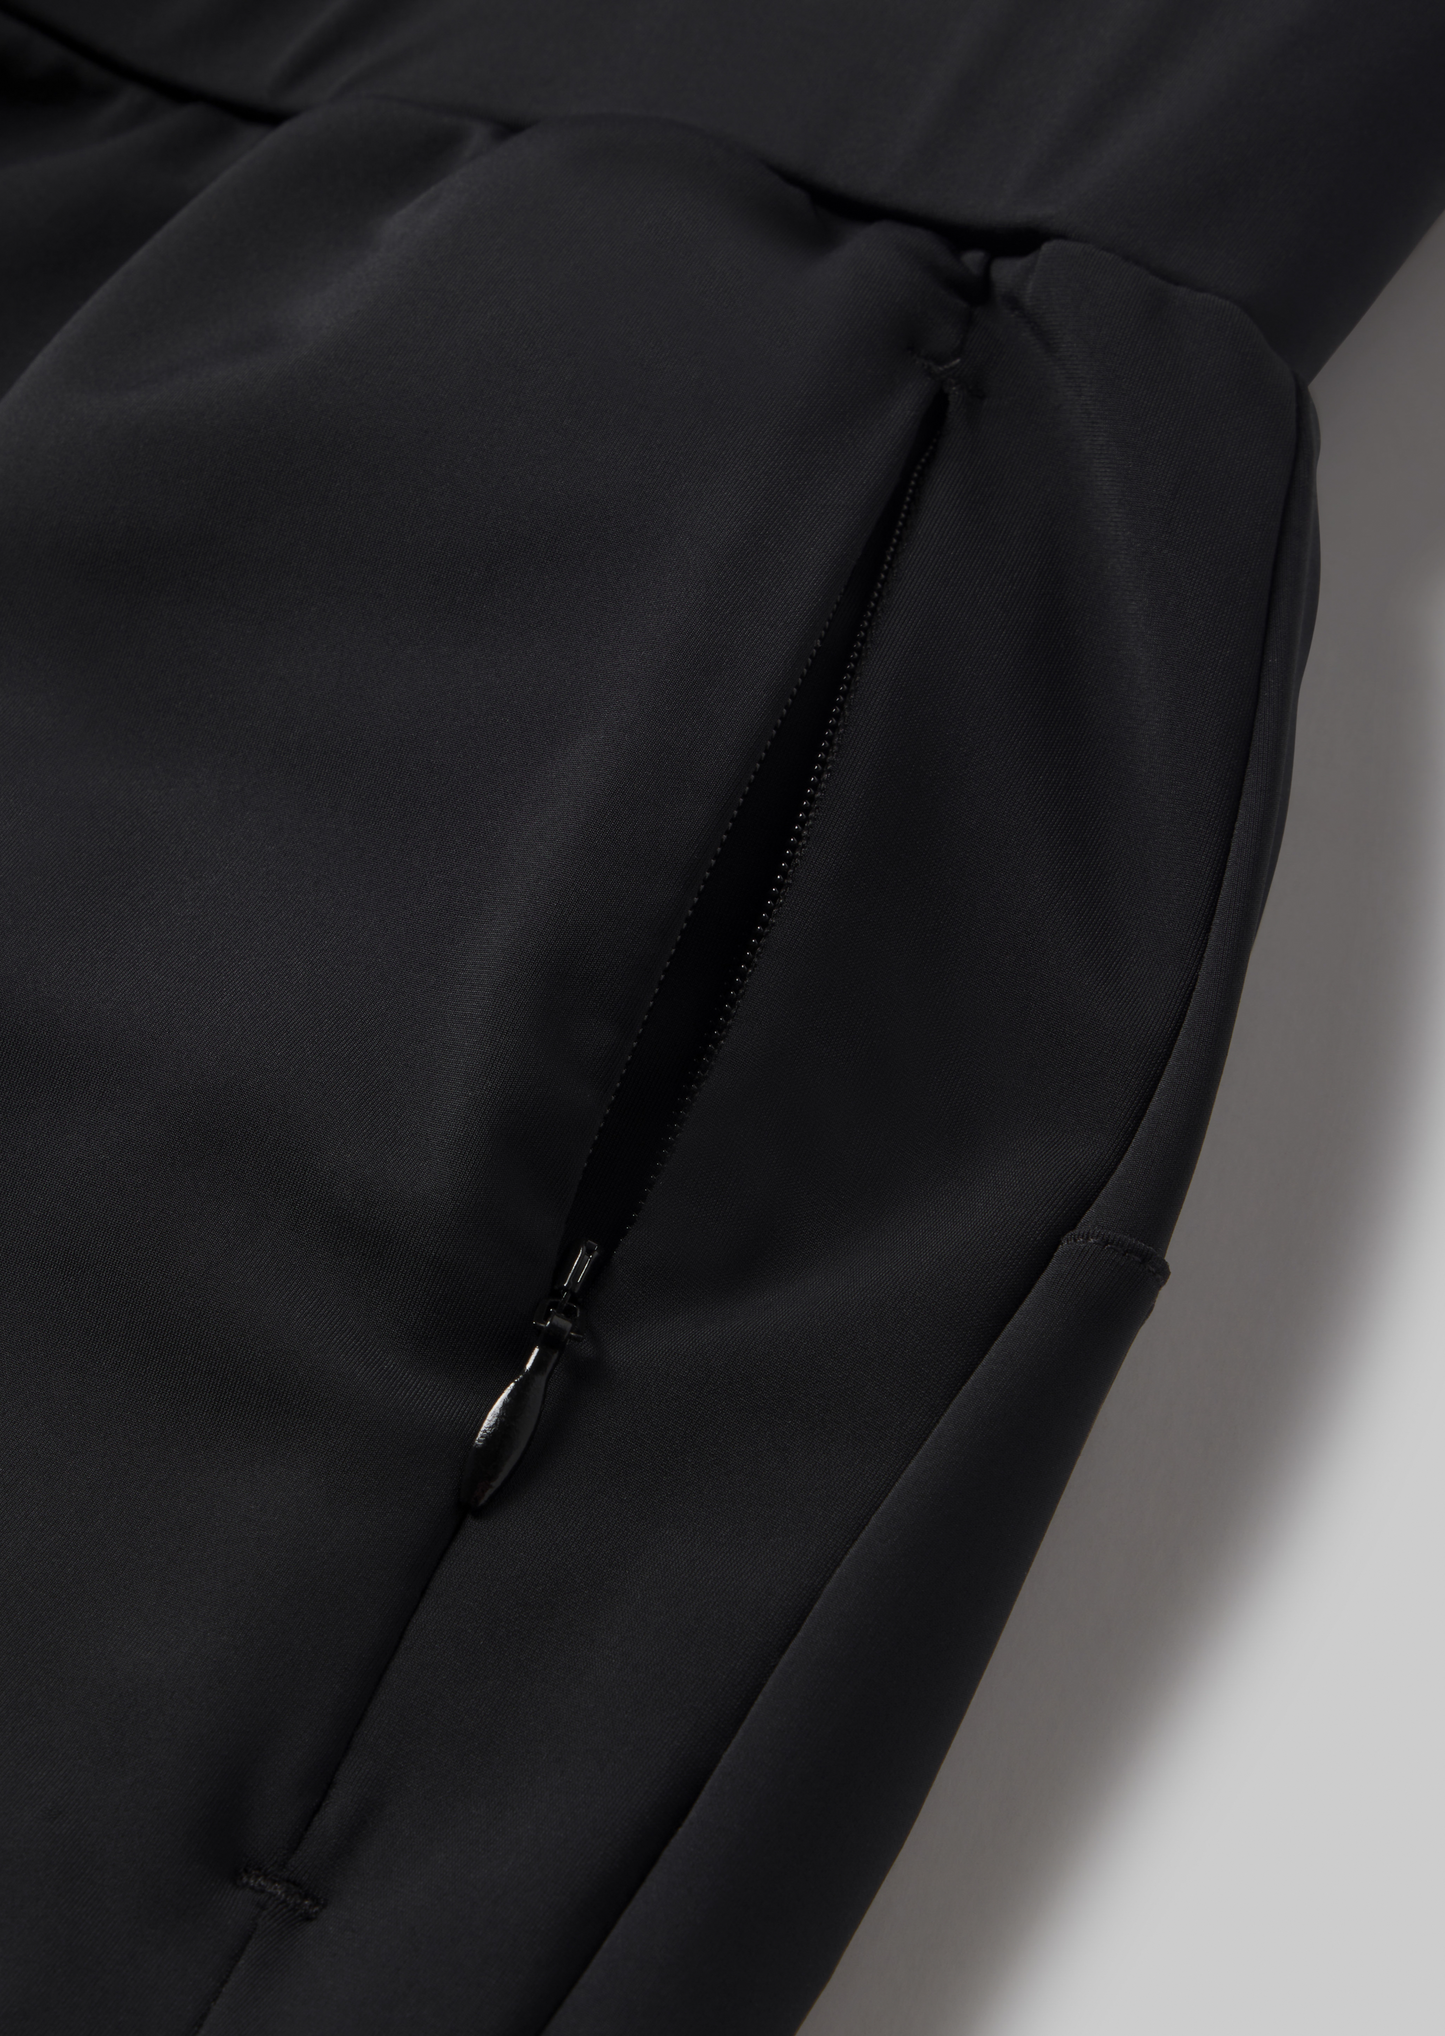 Tokyo Jogger - closeup of front zipper pocket